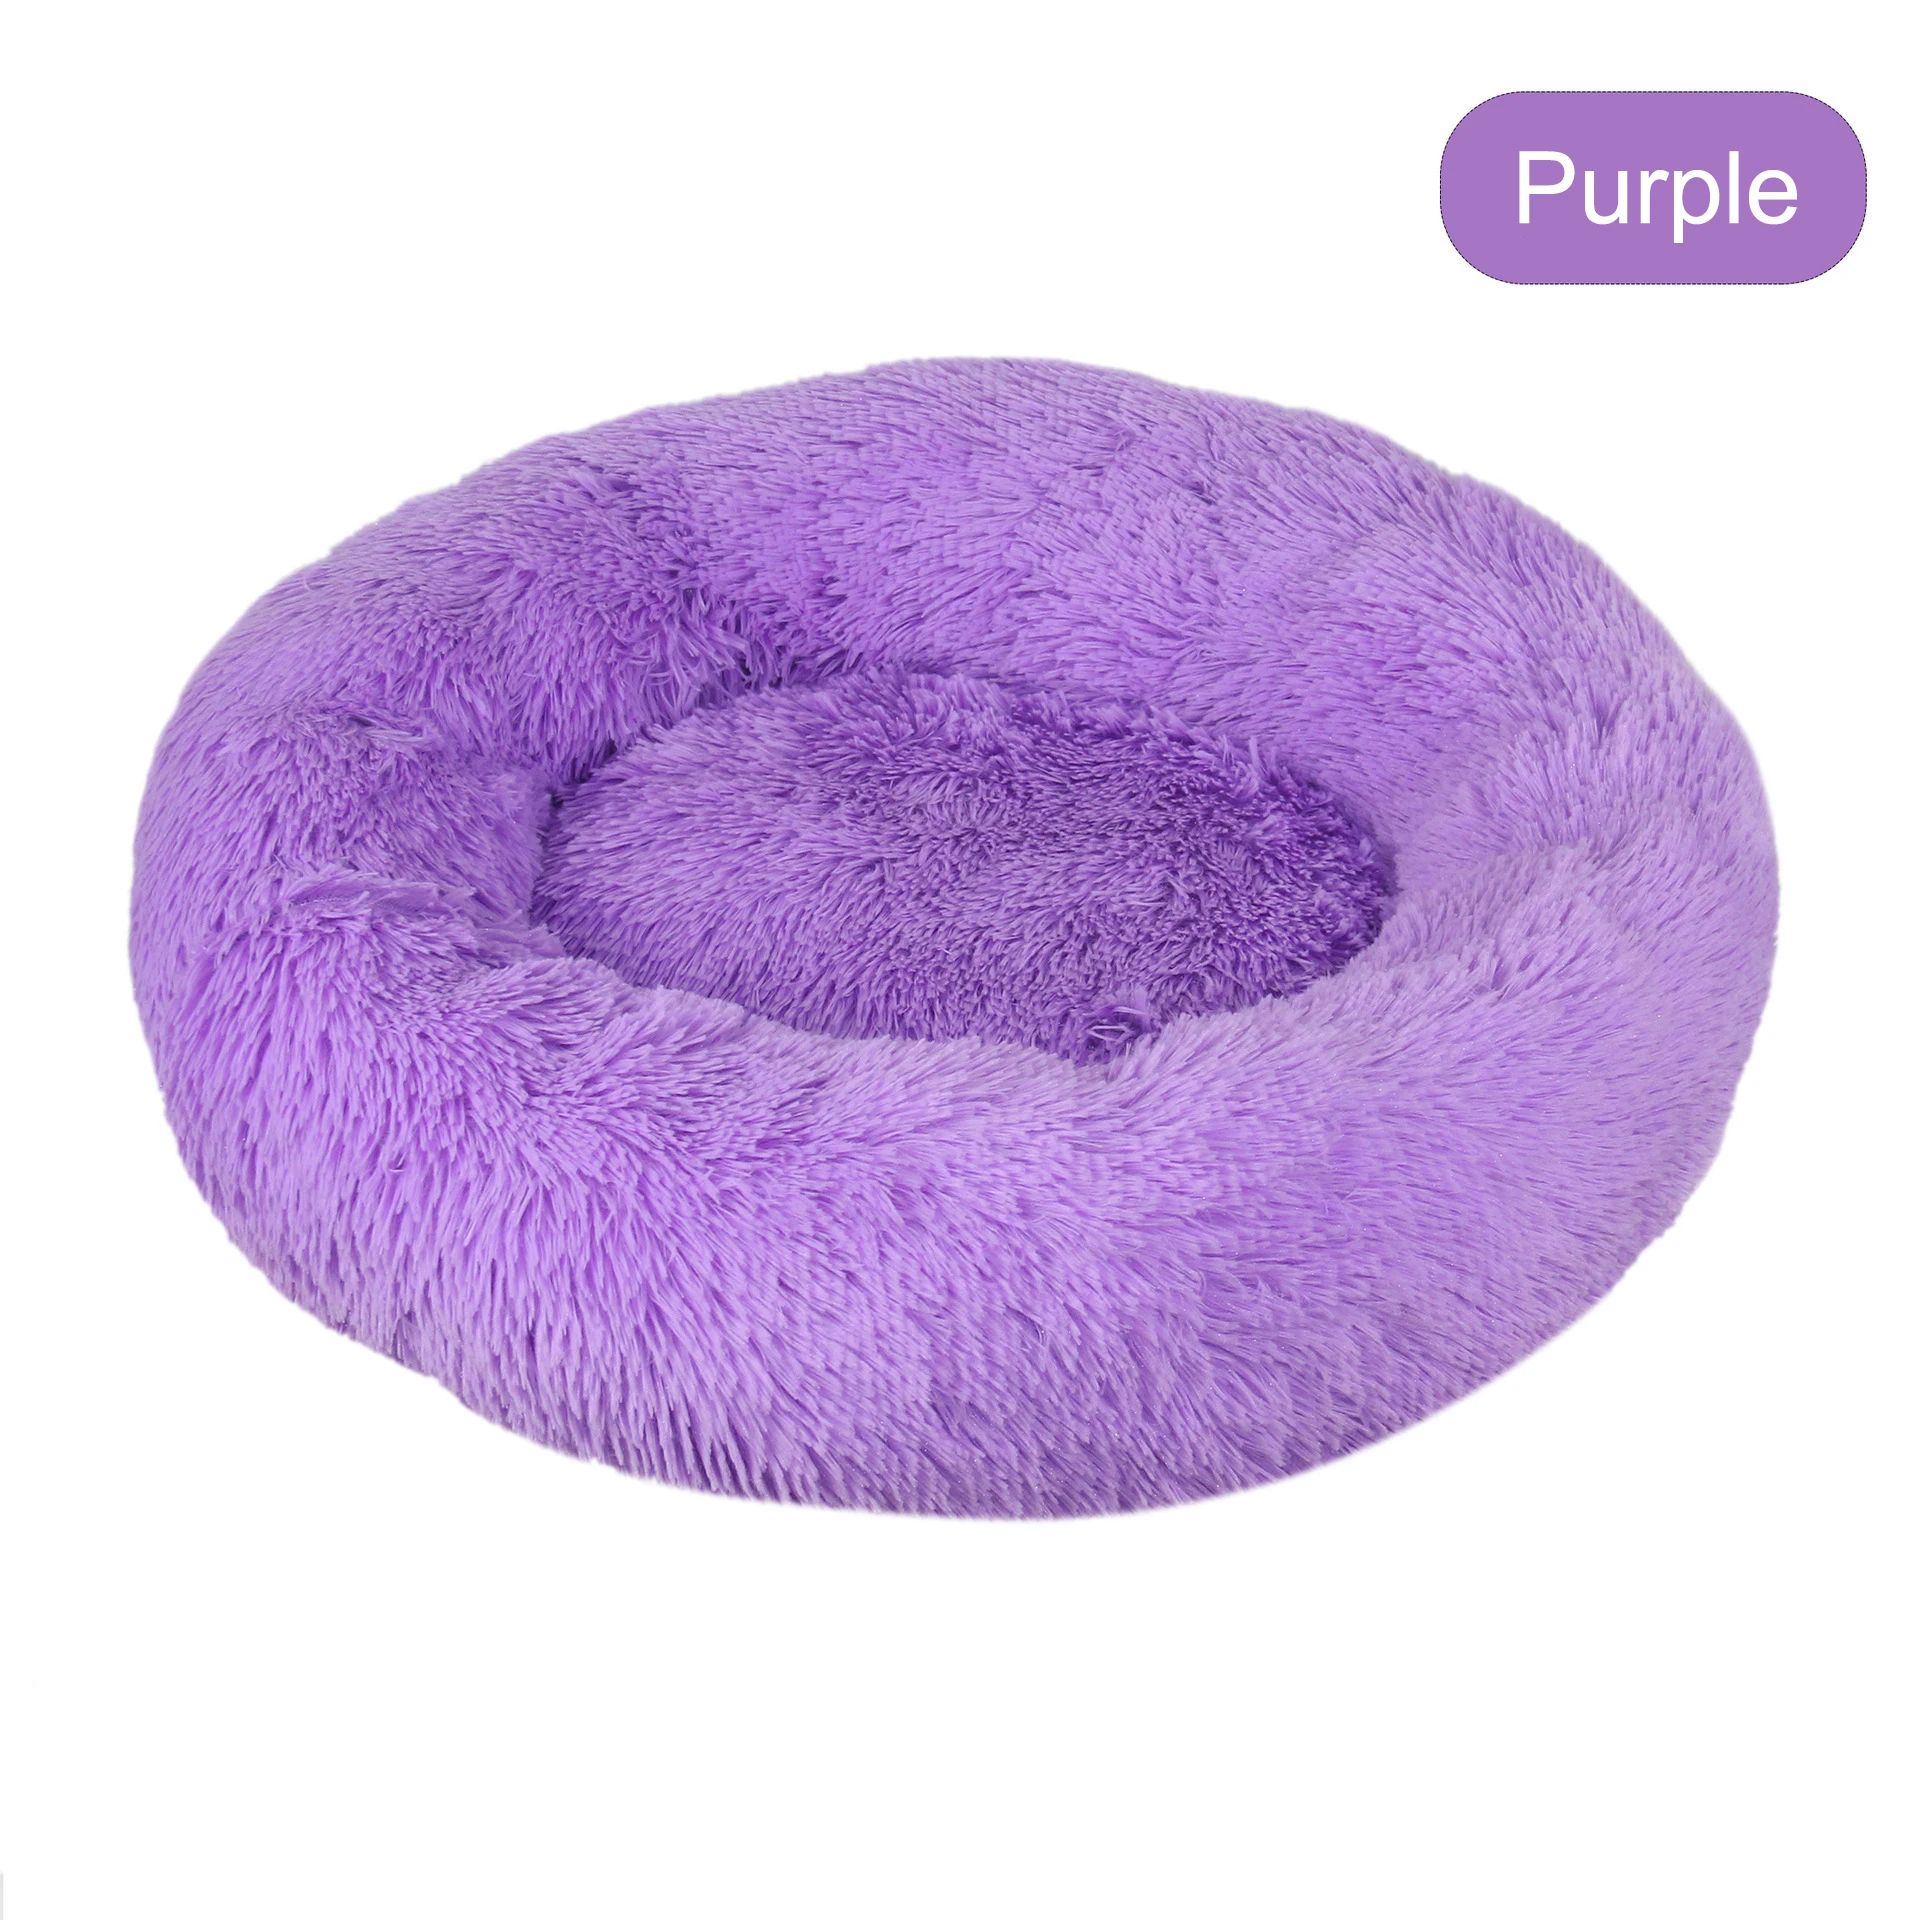 Couleur : violet Taille : diamètre 80 cm.